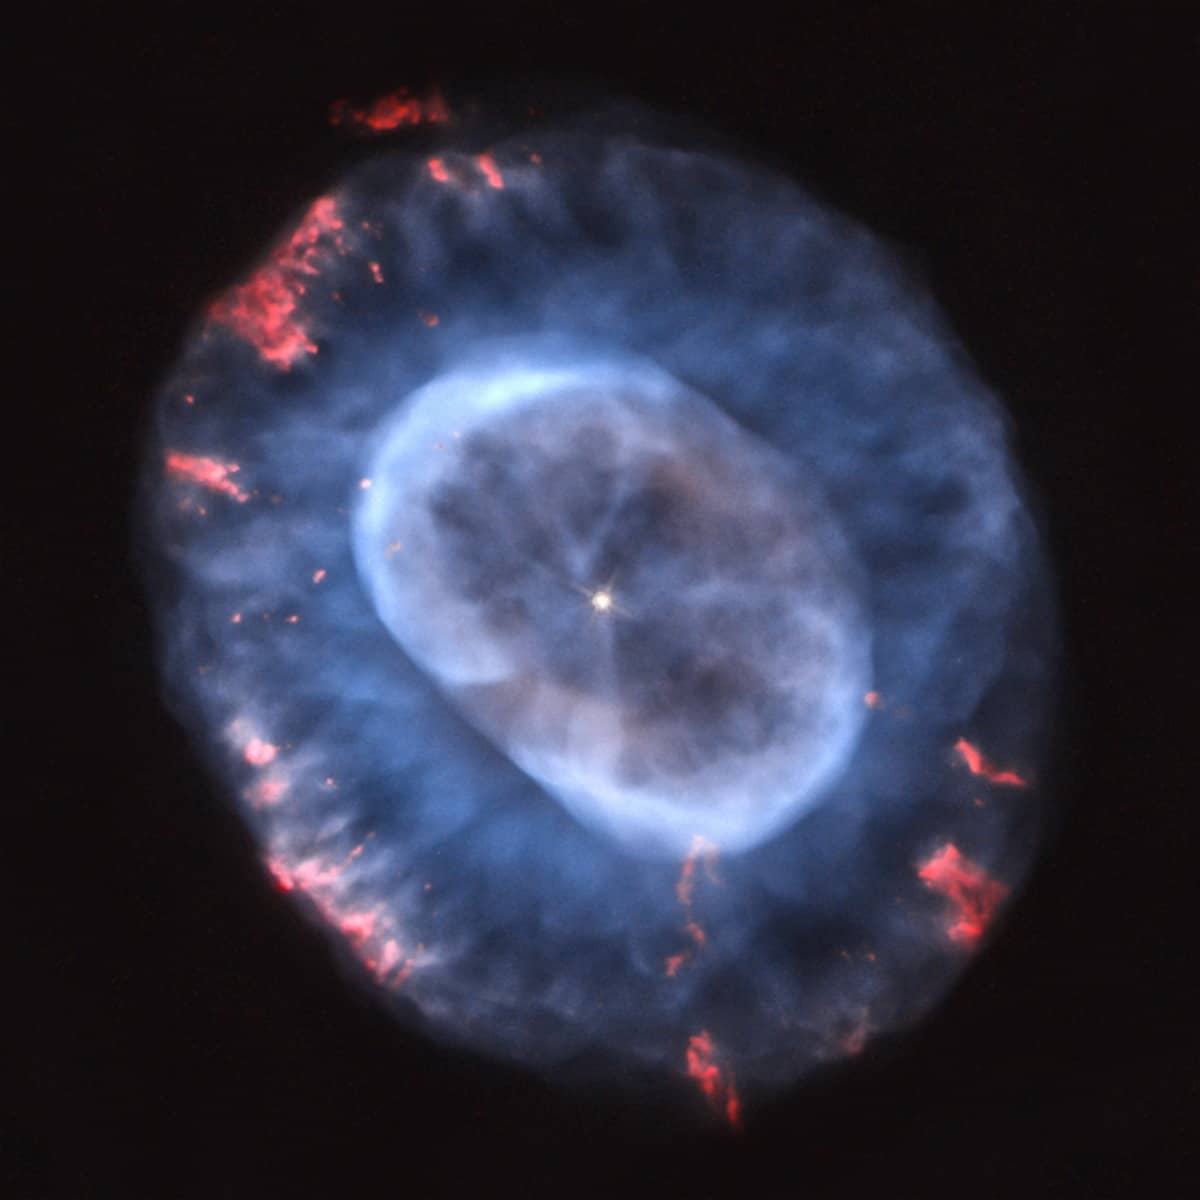 Zwei konzentrische ovale Strukturen bilden die Form des planetarischen Nebels NGC 7662.